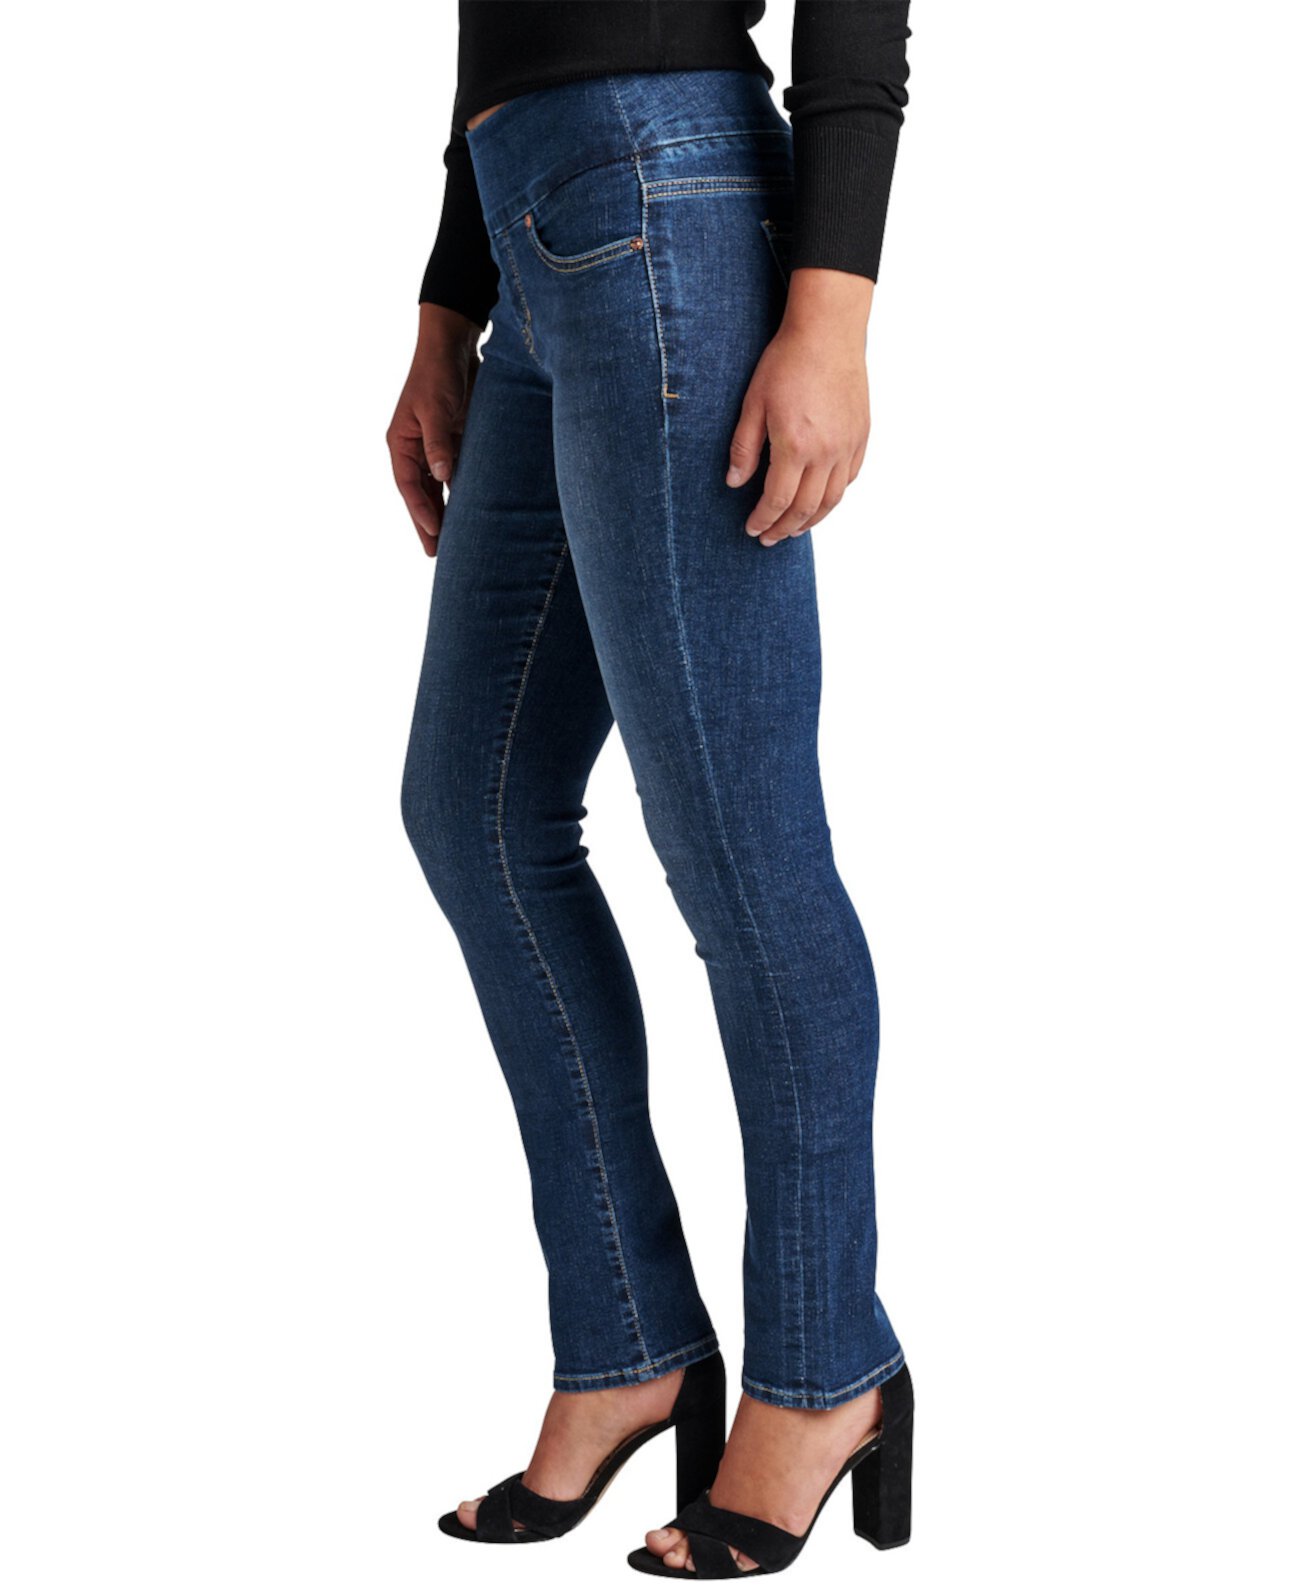 Джинсы Женские джинсы Peri со средней посадкой и прямыми без застежки JAG